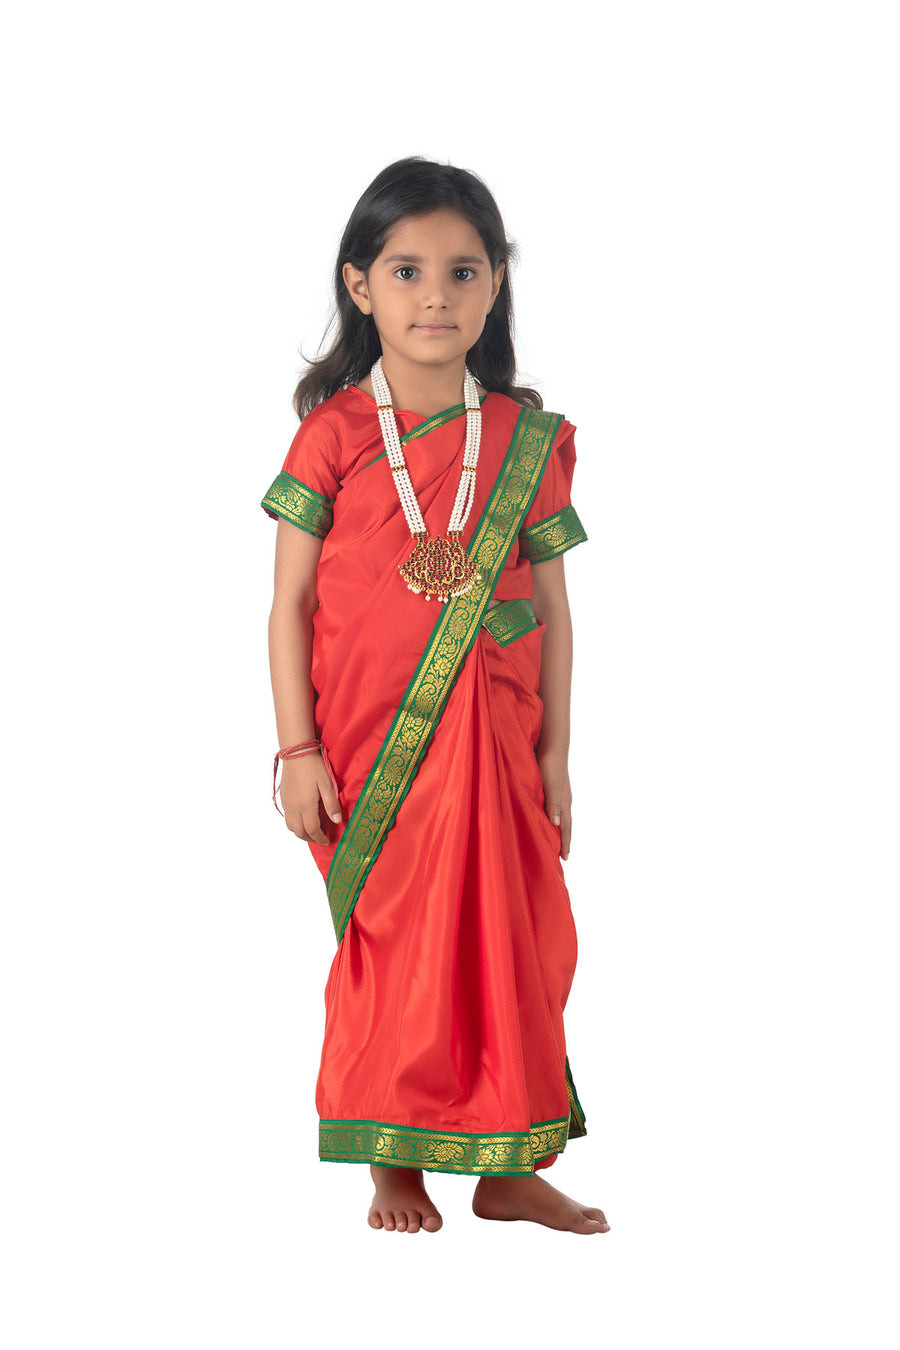 Lohri Festival & Punjabi Dance Fancy Dress Costumes for Boys & Girls -  Indian fancy dress